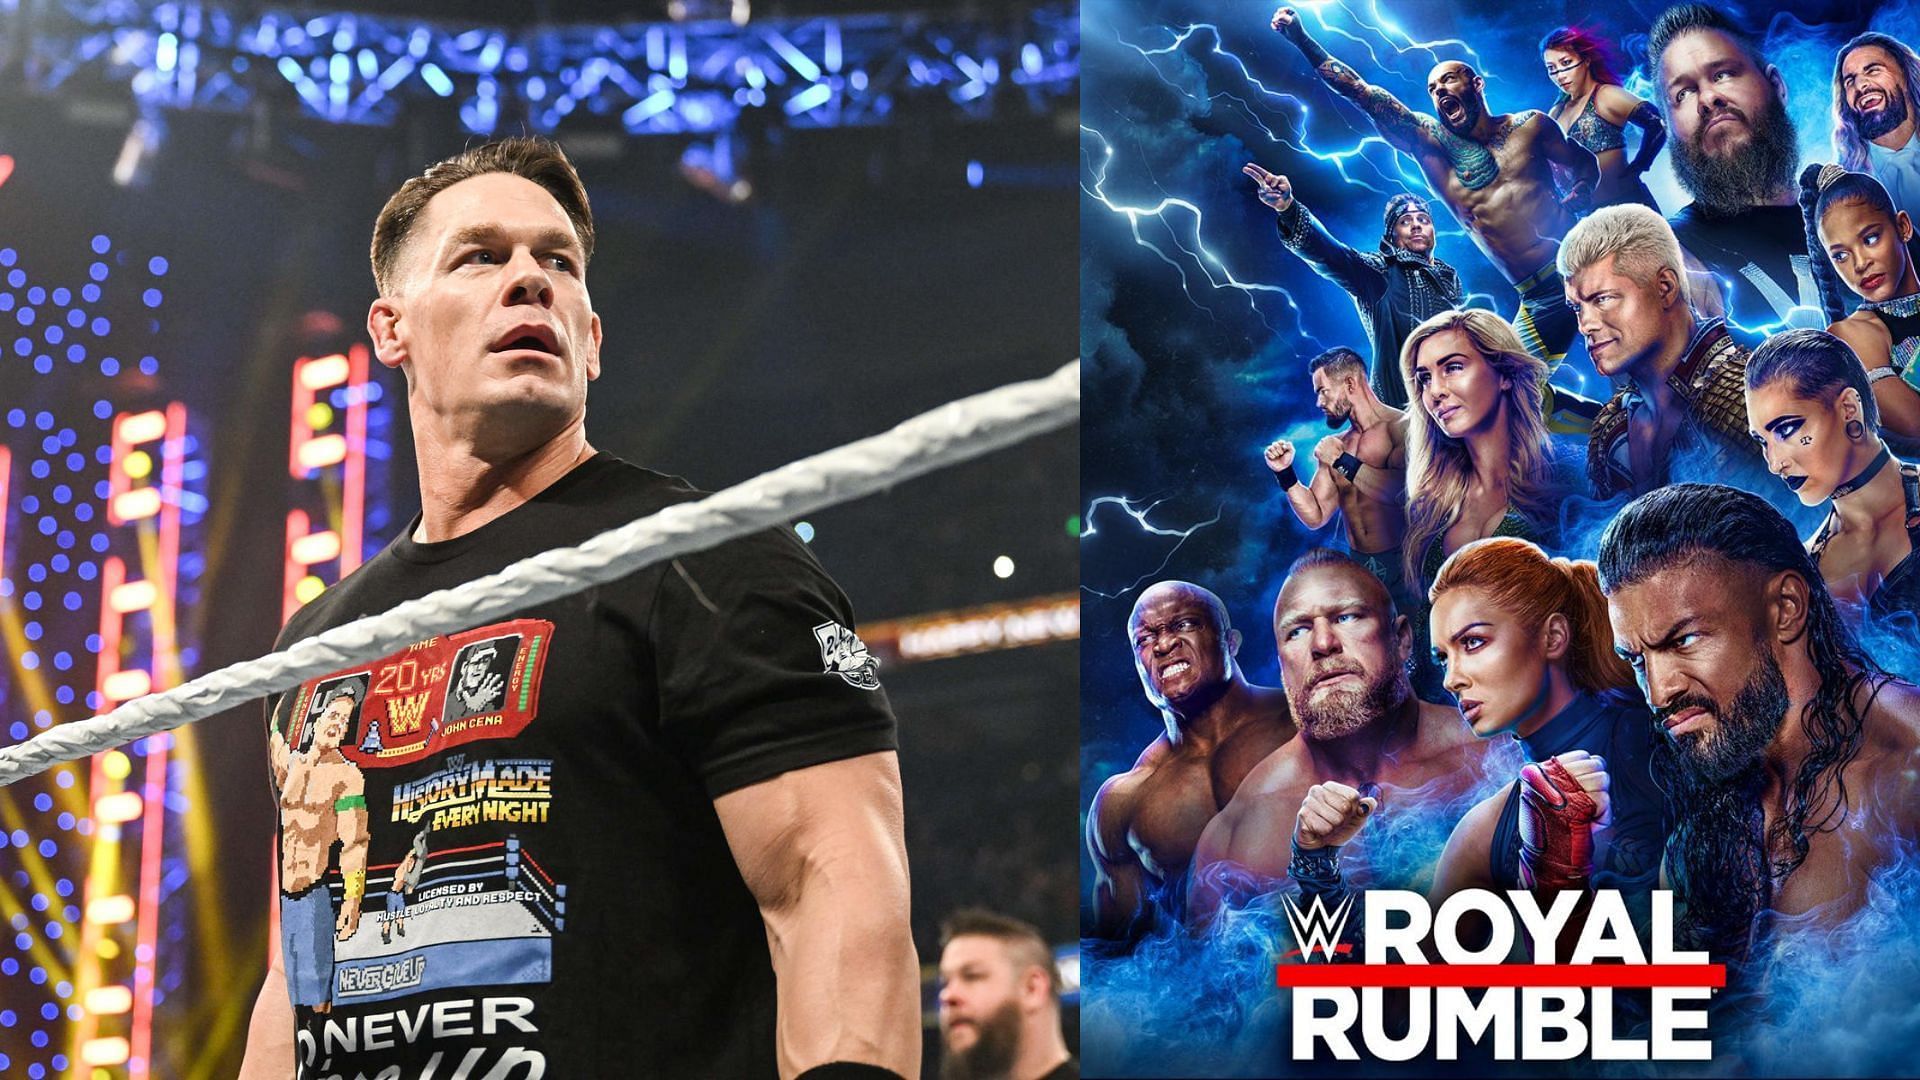 Royal Rumble returns Will John Cena return for WWE Royal Rumble 2023?